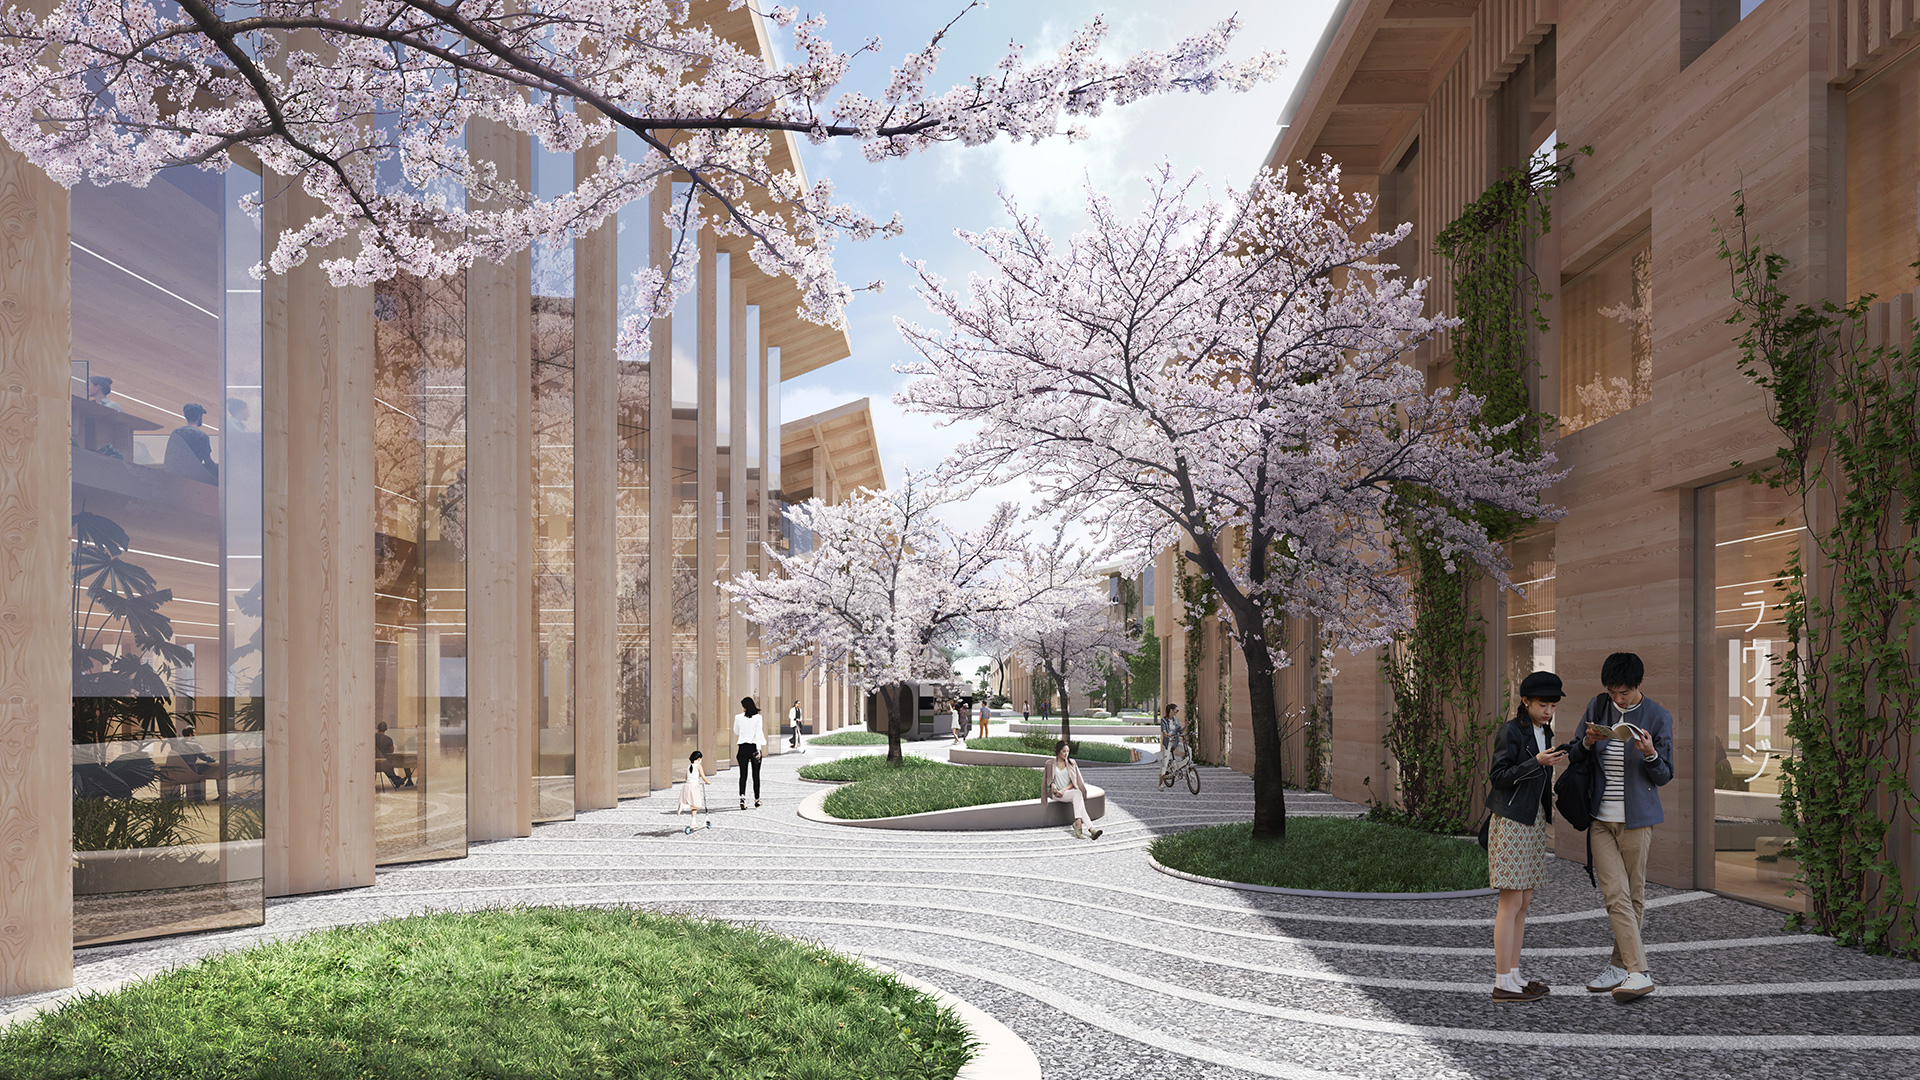 Woven City 將以木材為主要建材，來建造出一系列節能減碳的永續建築。